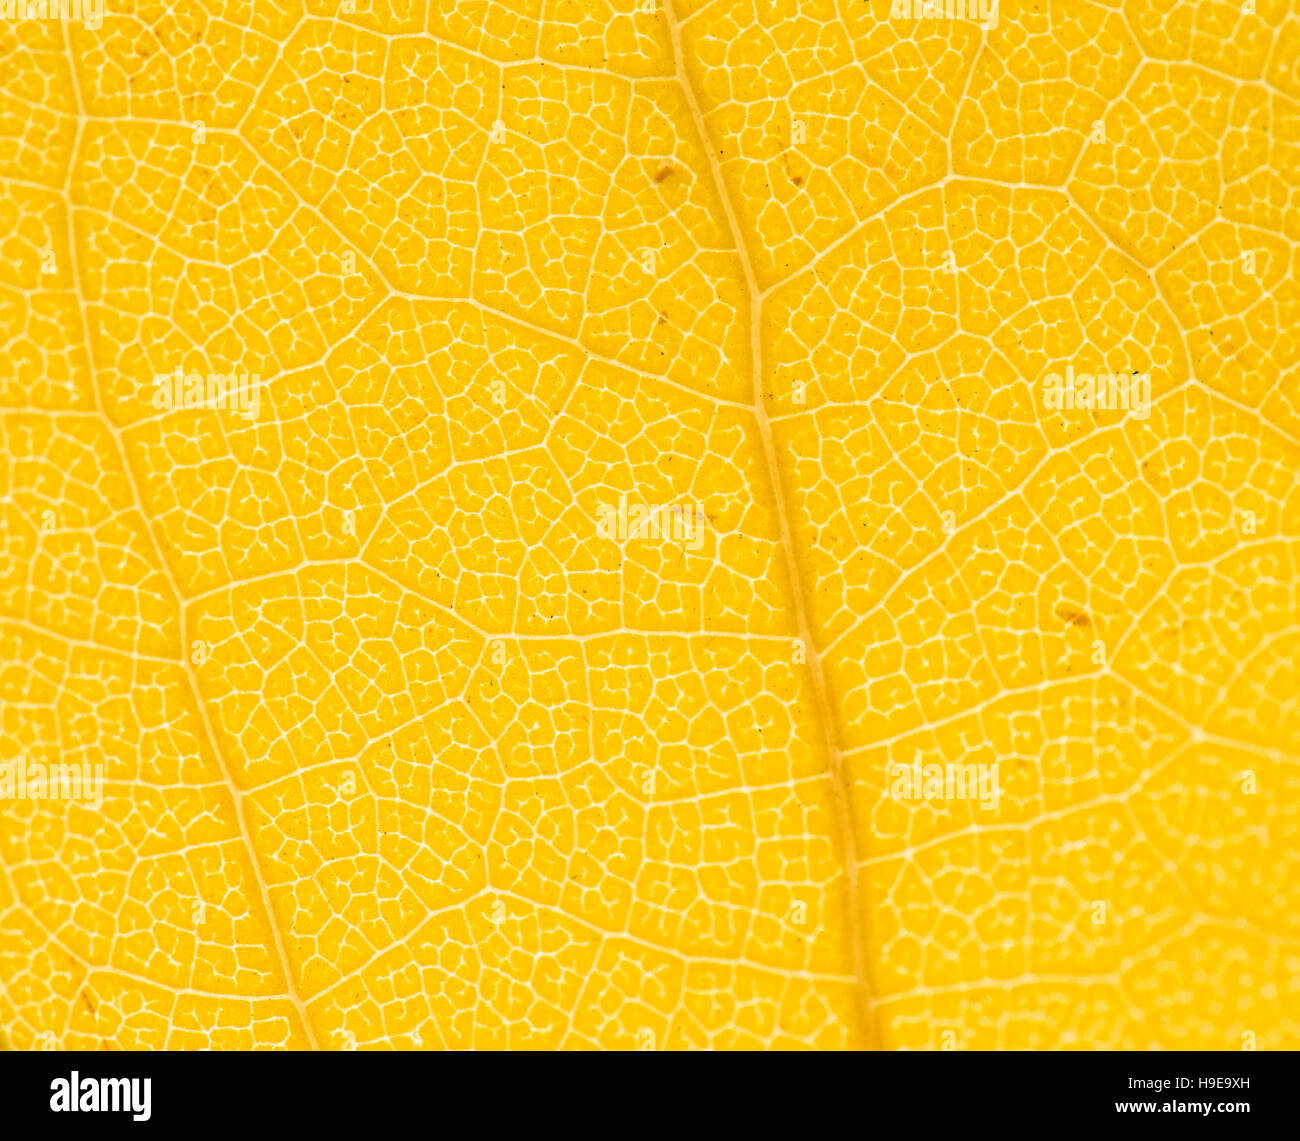 Schließen Sie detaillierte Makro von einem bunten Herbst Blatt zeigt die Textur, Venen und Muster. Stockfoto